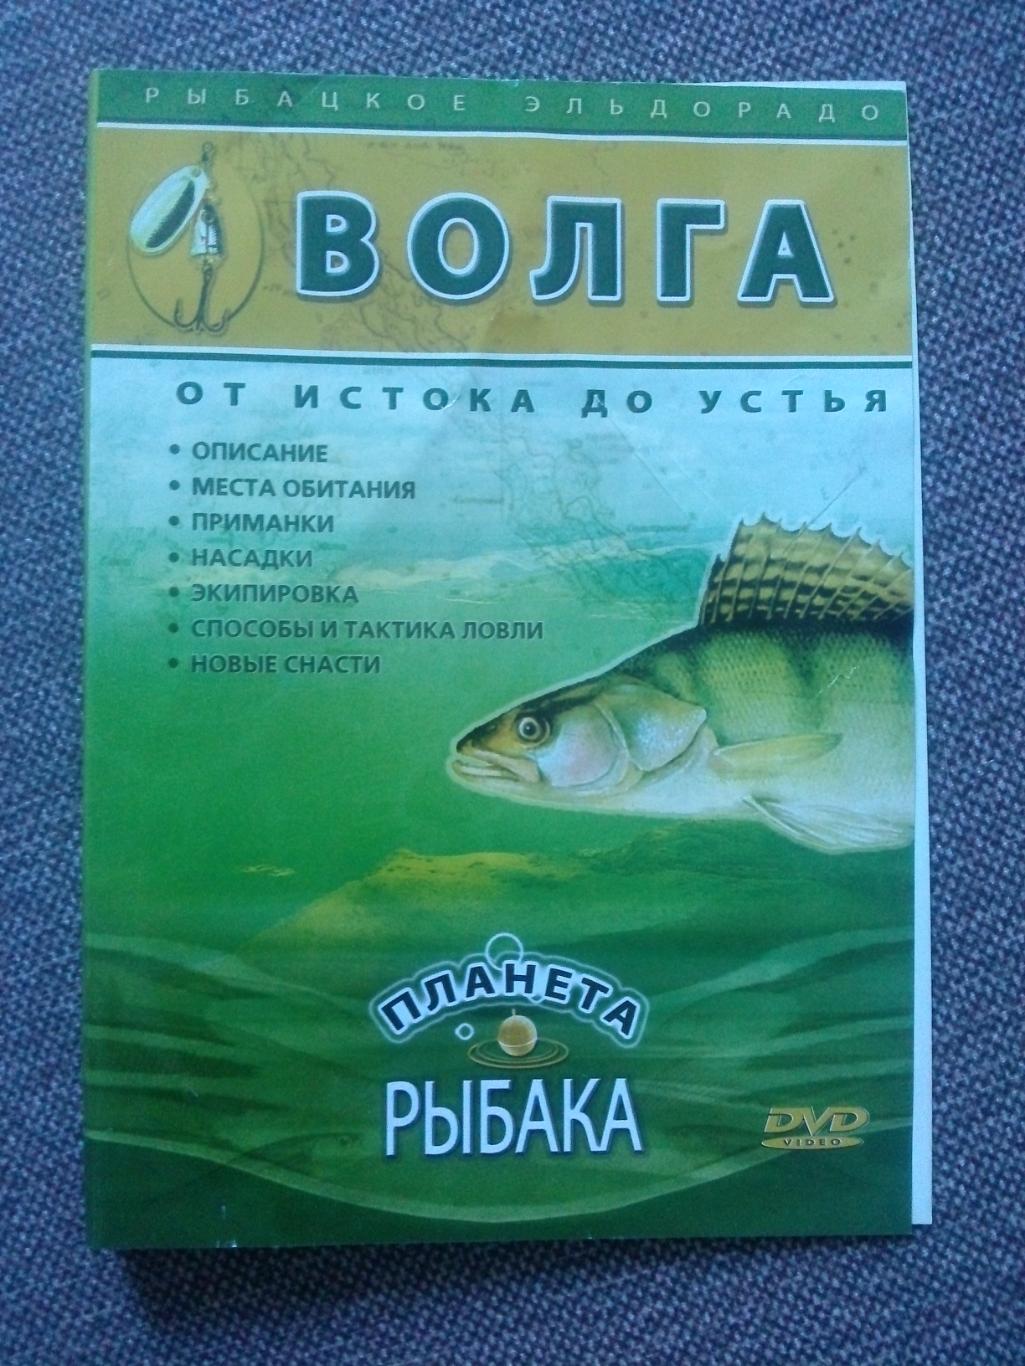 DVD диск : фильм Волга - от истока до устья 10 программ на диске (Рыбалка)